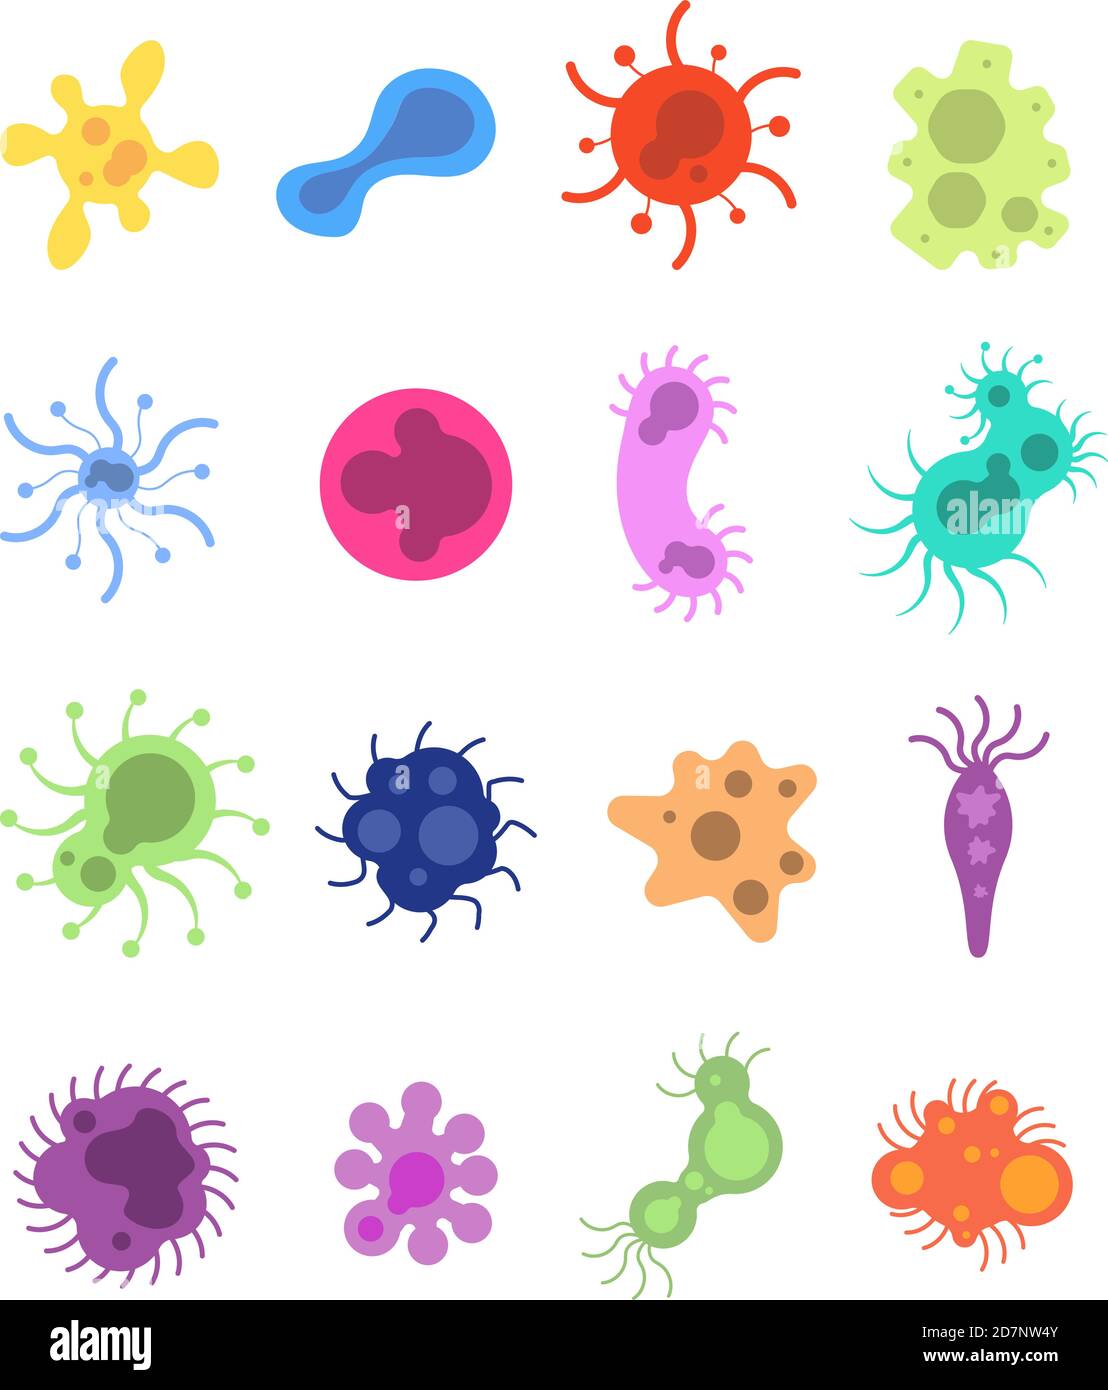 Gérmenes. Virus de la gripe células de la toxina microbios ameba epidemiología bacterias enfermedad germen gripe celular microbiología conjunto de vectores aislados. Ameba y gripe, células y enfermedades, enfermedad de la bacteria ilustración Ilustración del Vector